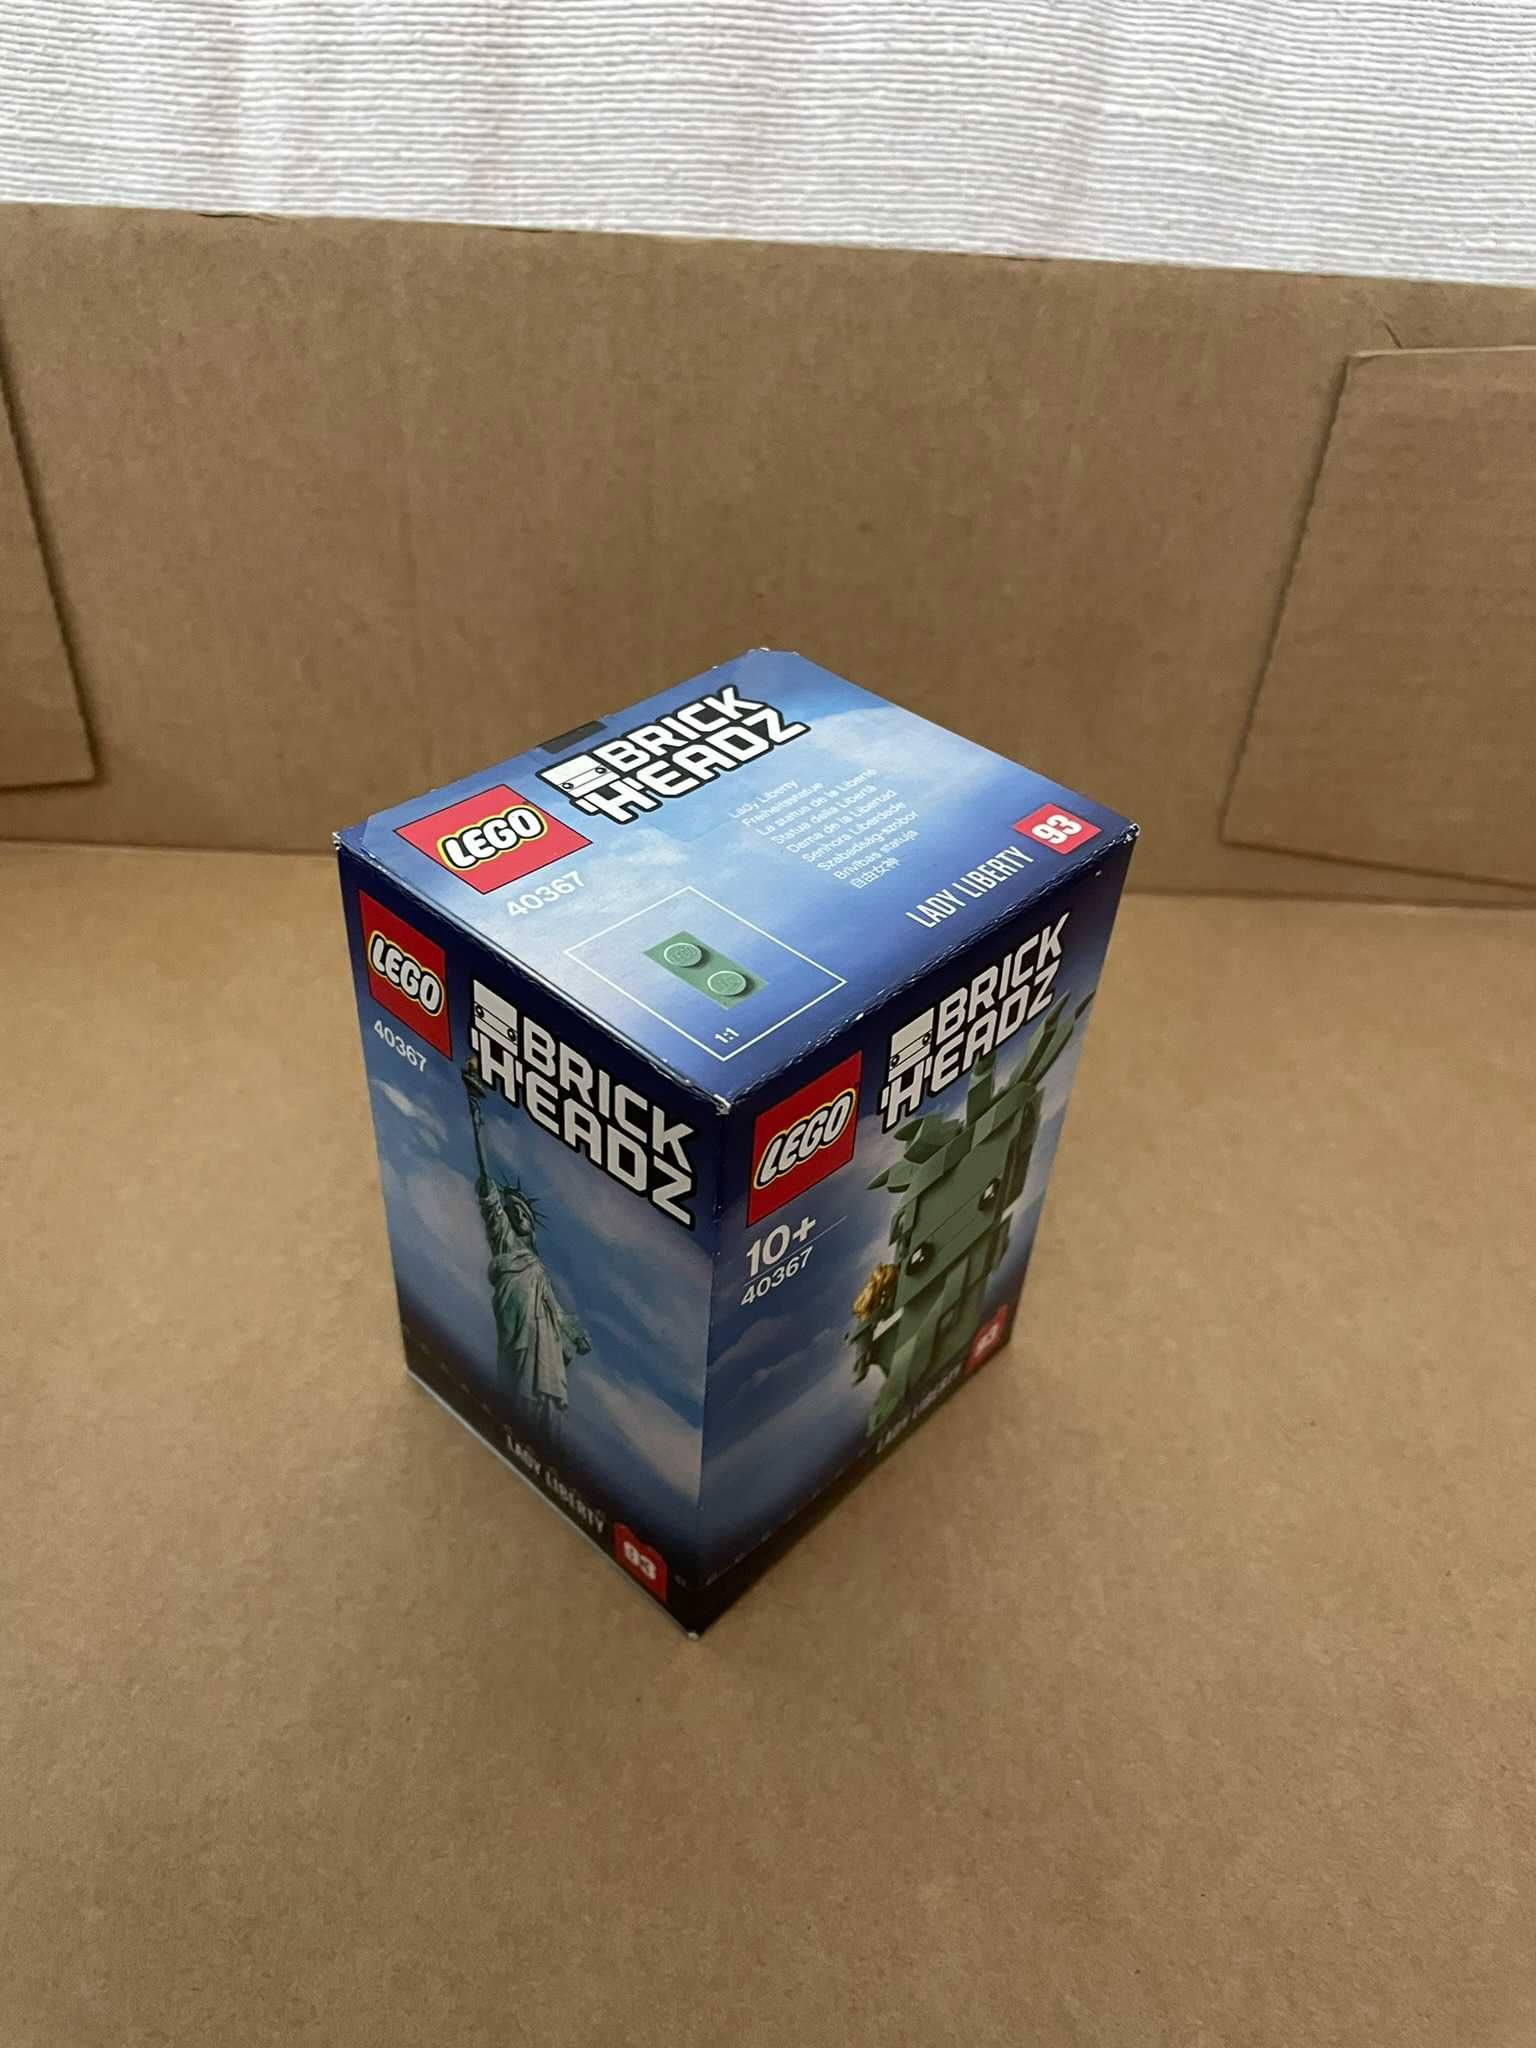 LEGO - Brickheadz - 40367 Lady Liberty